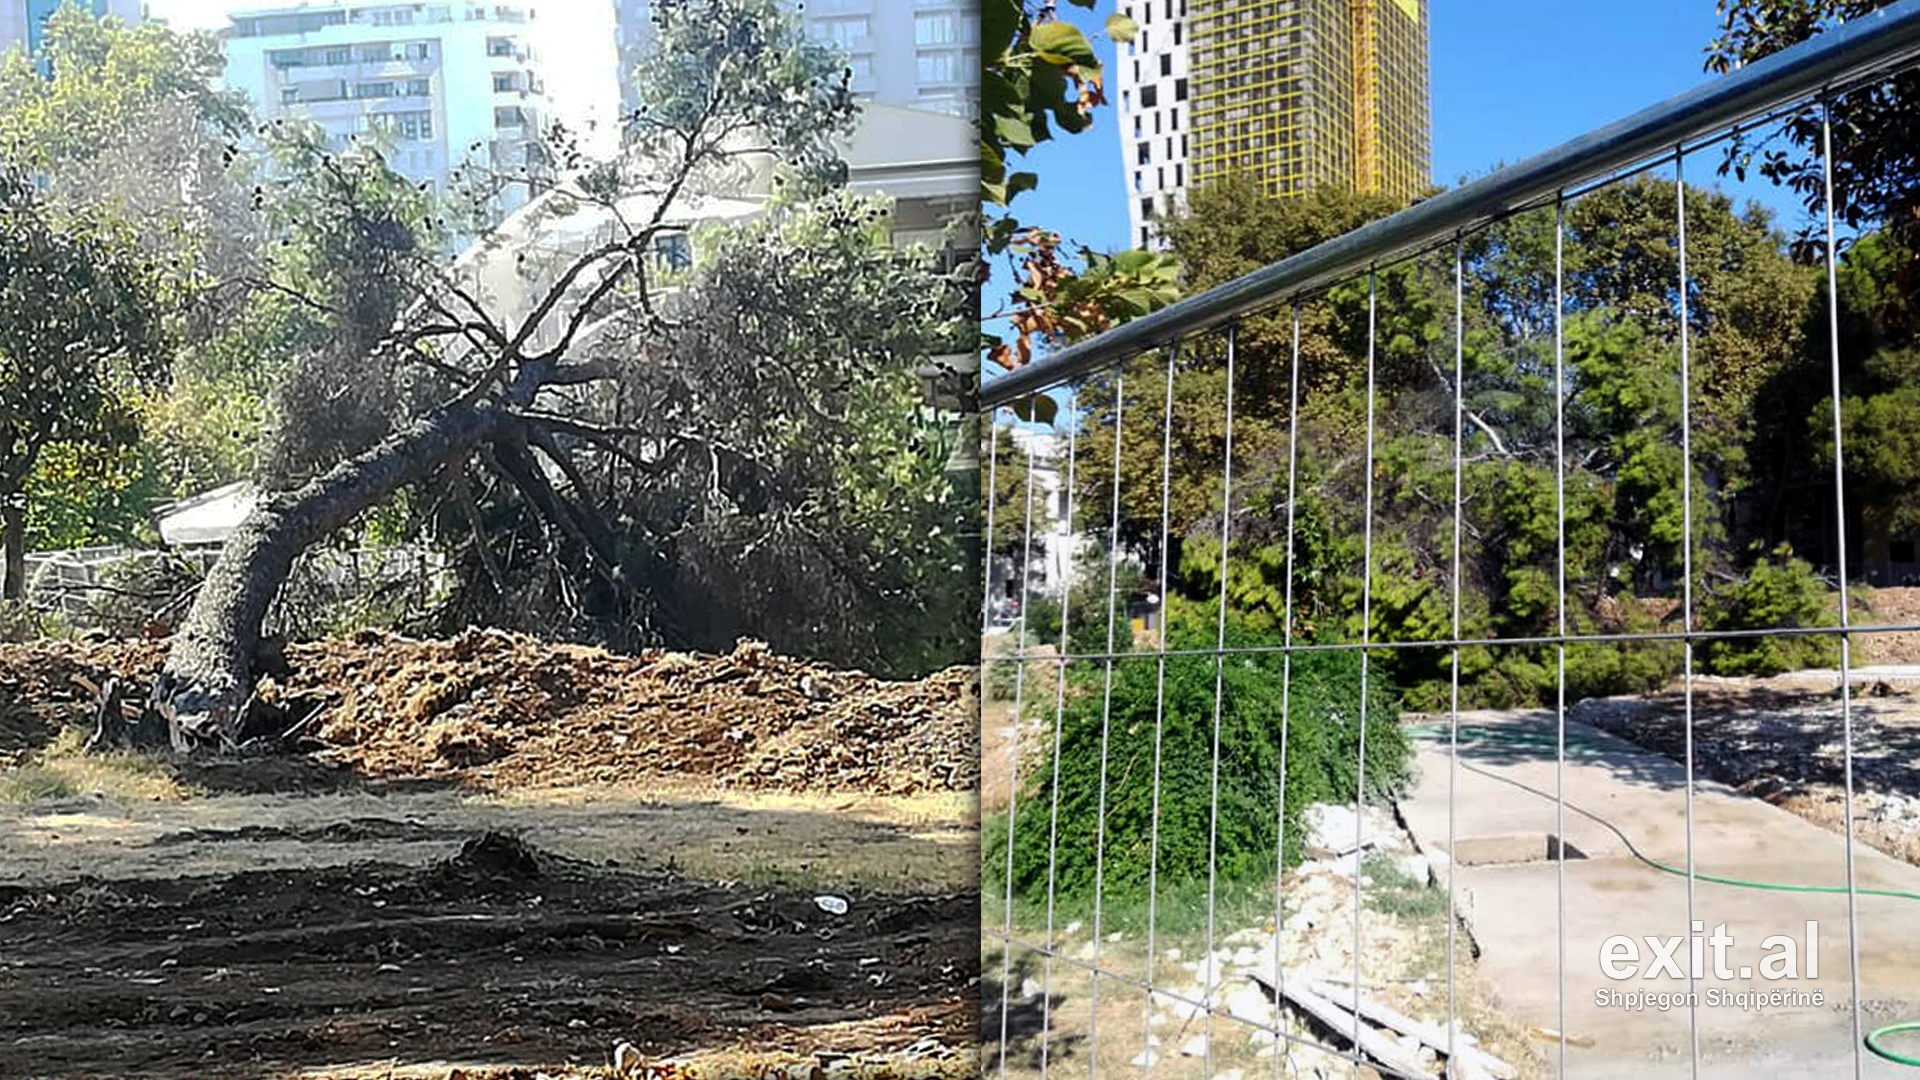 Rehablitimi i Parkut Rinia vazhdon me shkulje pemësh